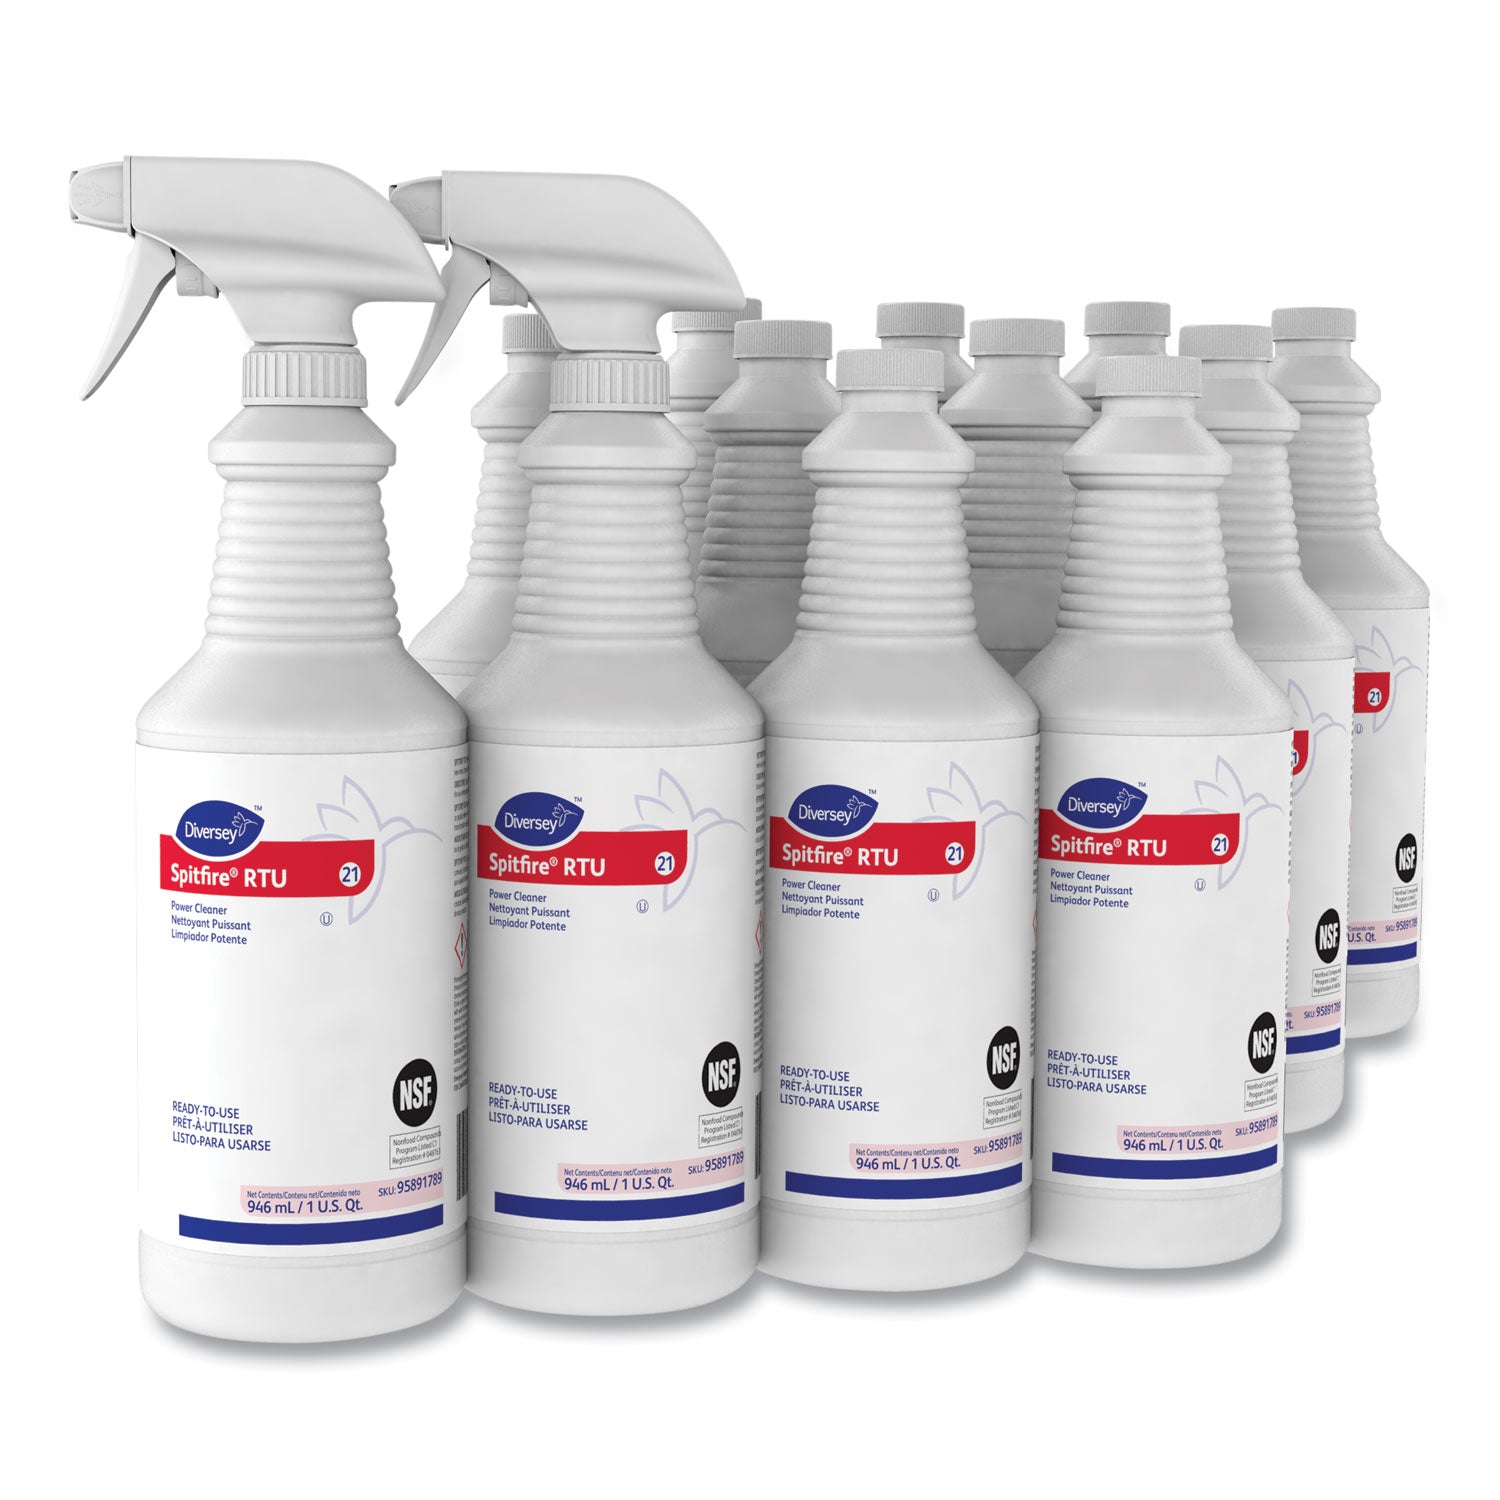 spitfire-power-cleaner-liquid-fresh-pine-scent-32-oz-spray-bottle-12-carton_dvo95891789 - 1